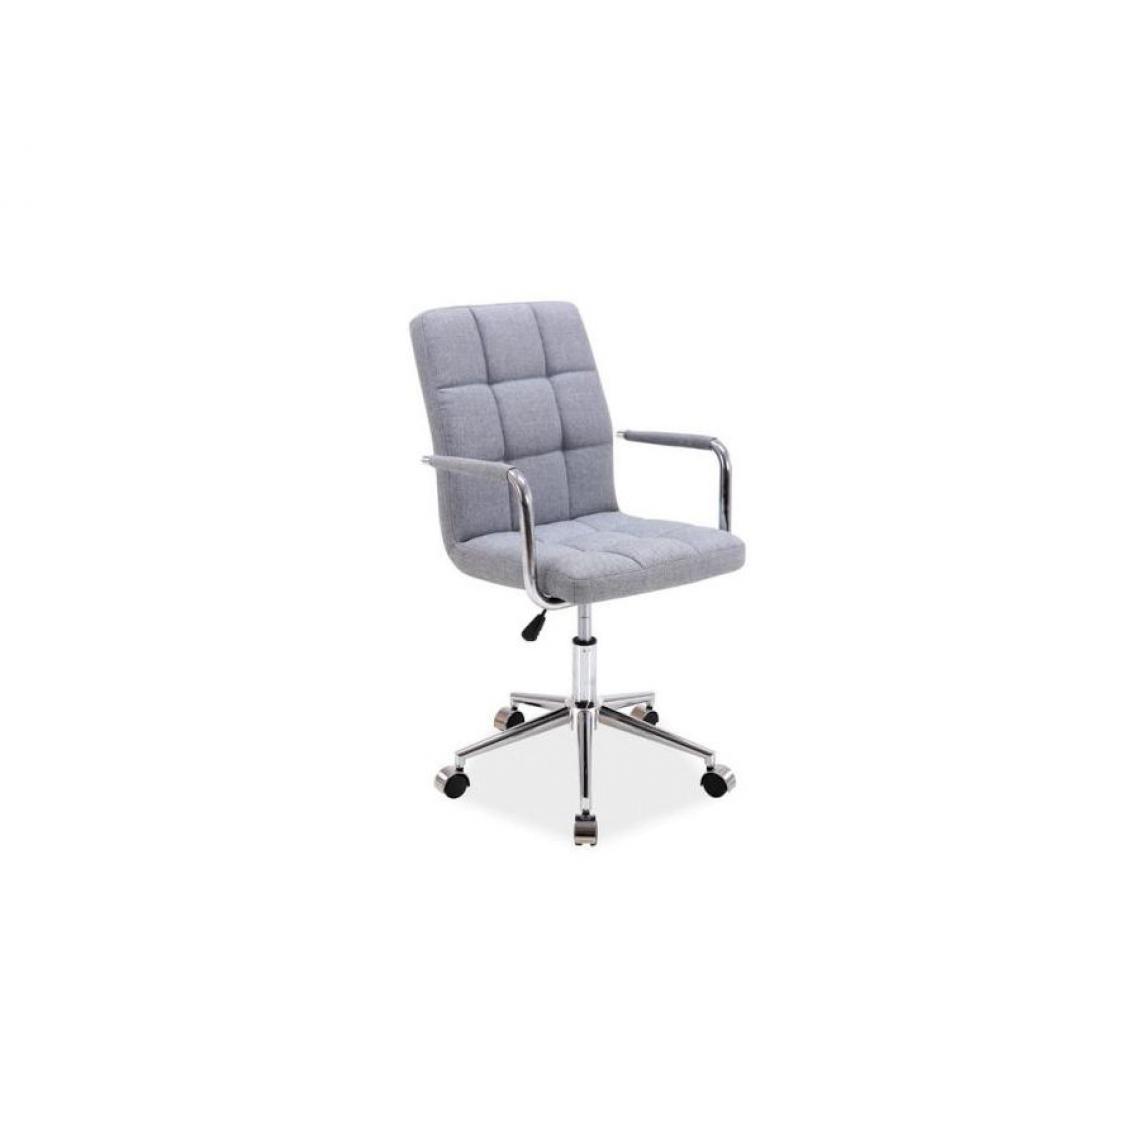 Hucoco - WIONE | Chaise pivotante avec piètement chromé | Hauteur 87-97 cm | Chaise de bureau | Revêtement en cuir écologique - Gris - Chaises